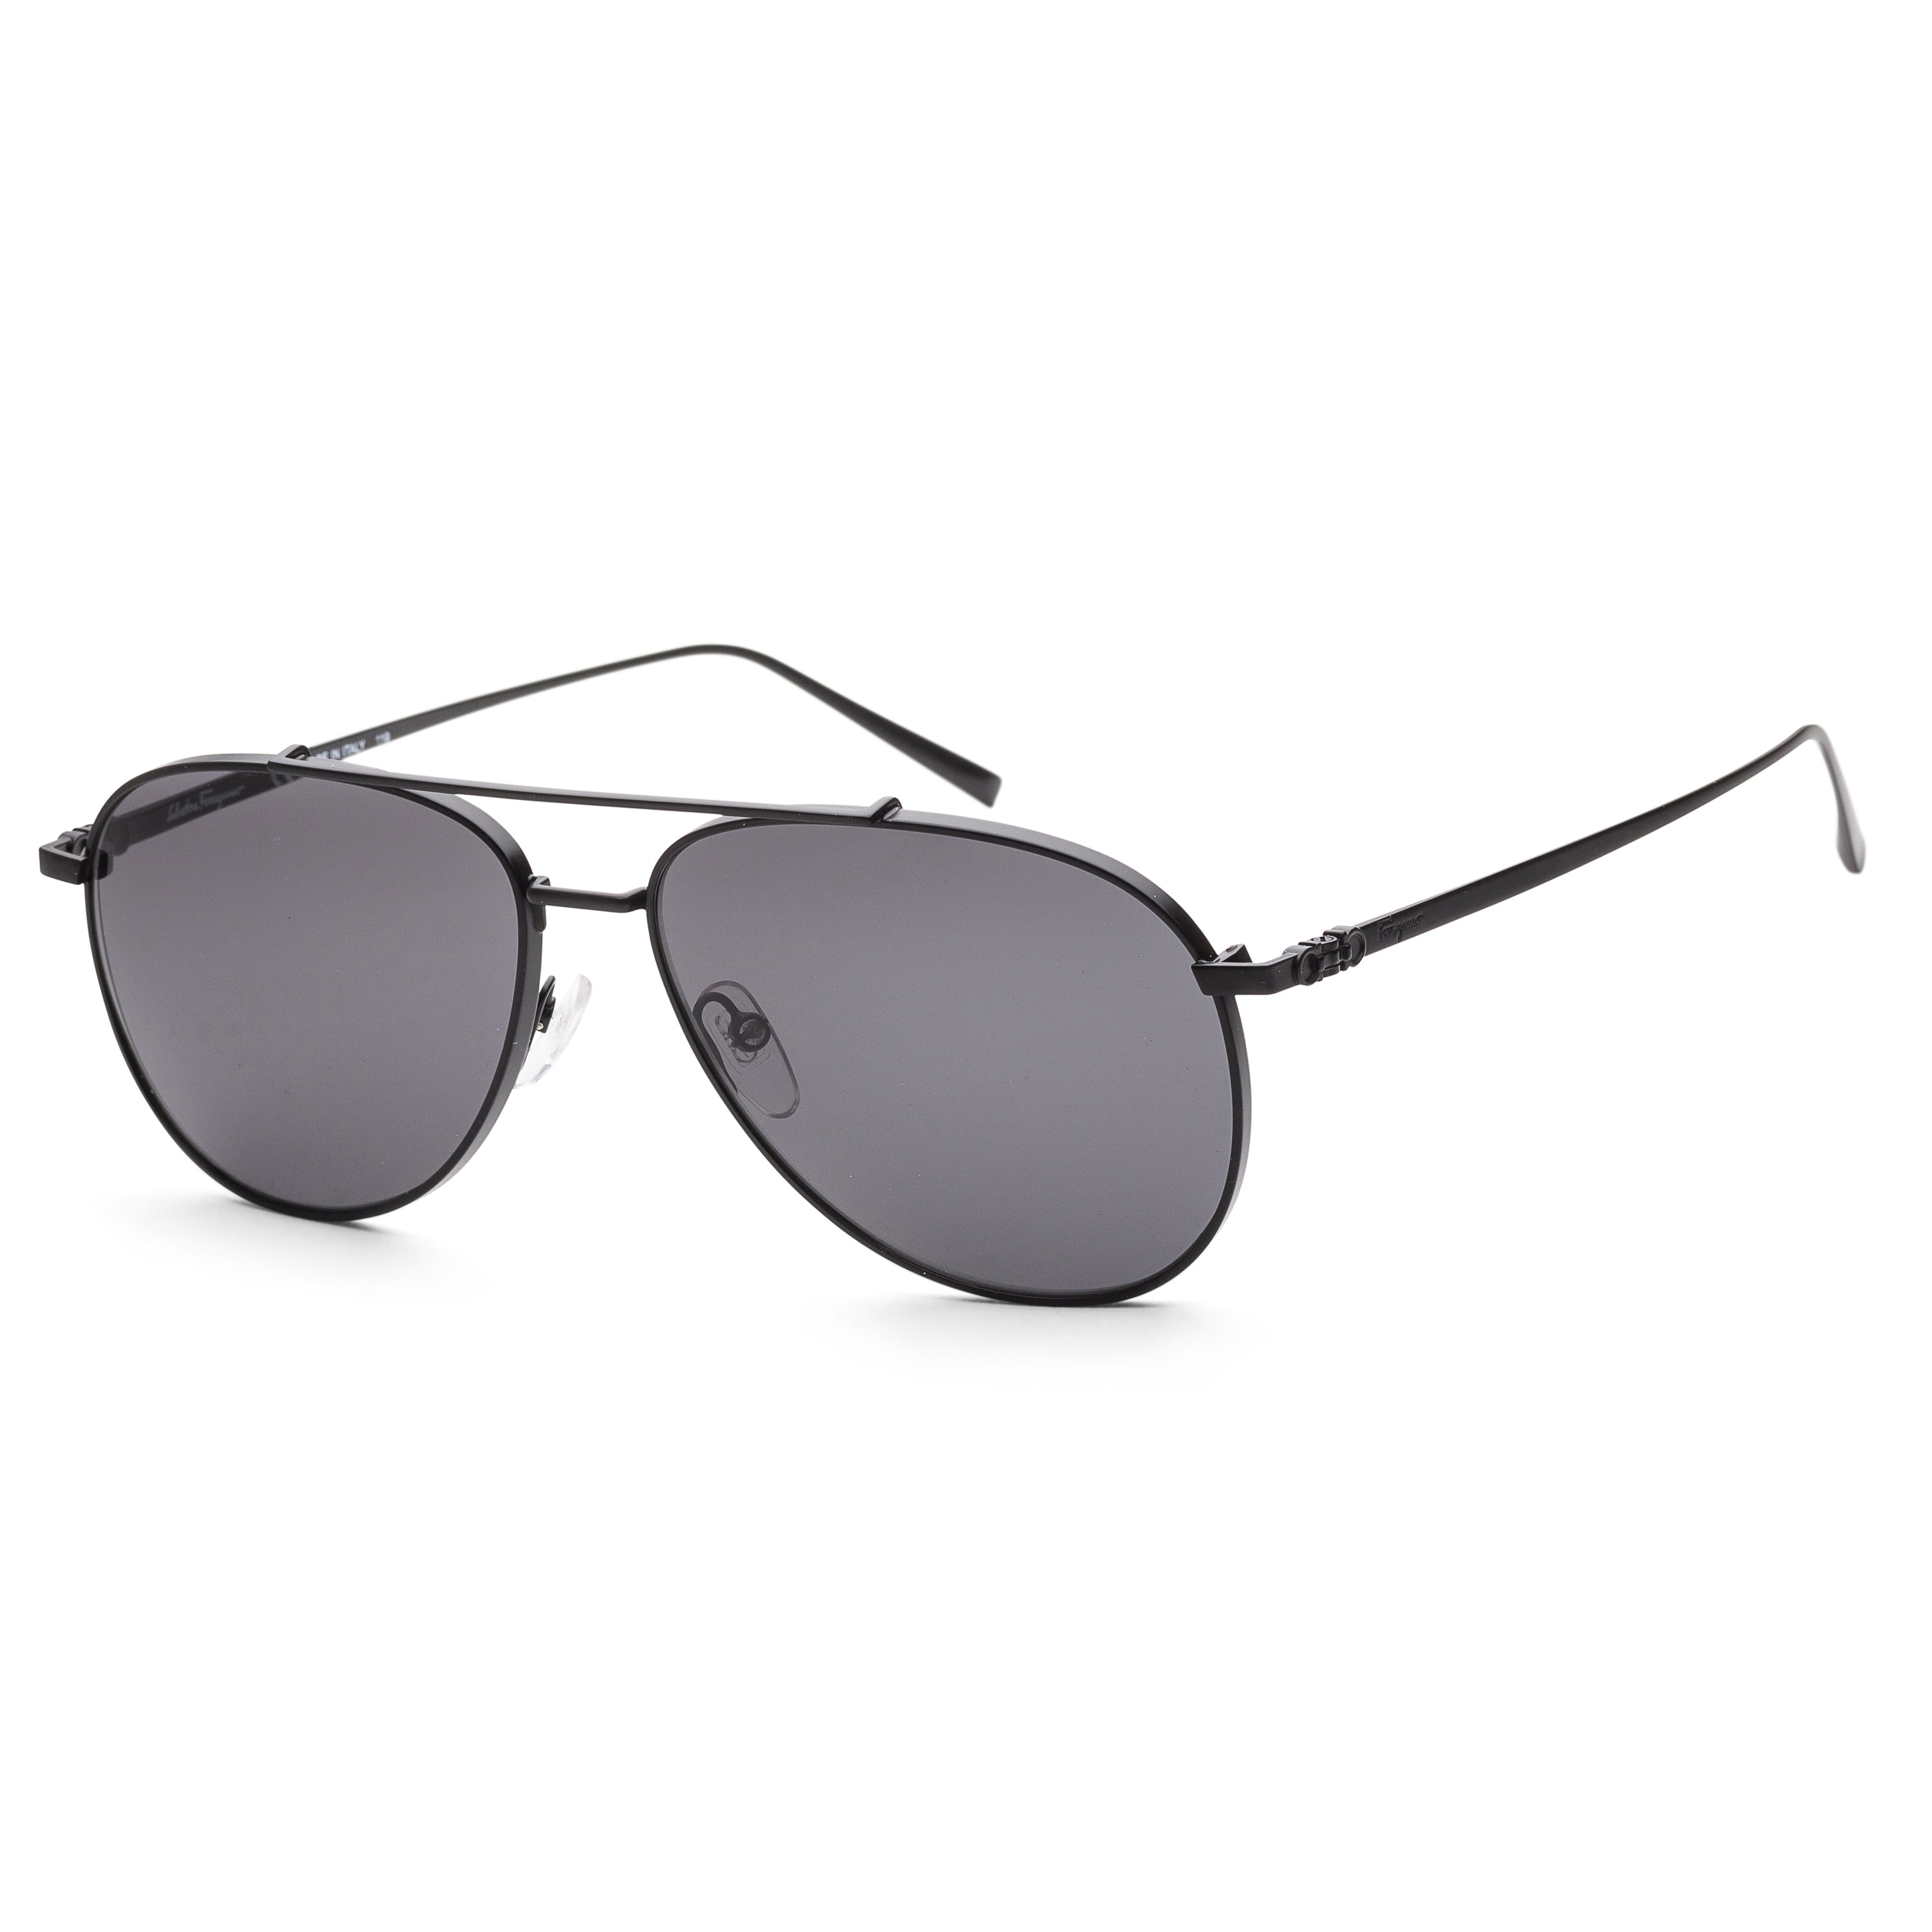 title:Ferragamo Men's SF201S-6015002 Fashion 60mm Matte Black Sunglasses;color:Black Lens, Matte Black Frame